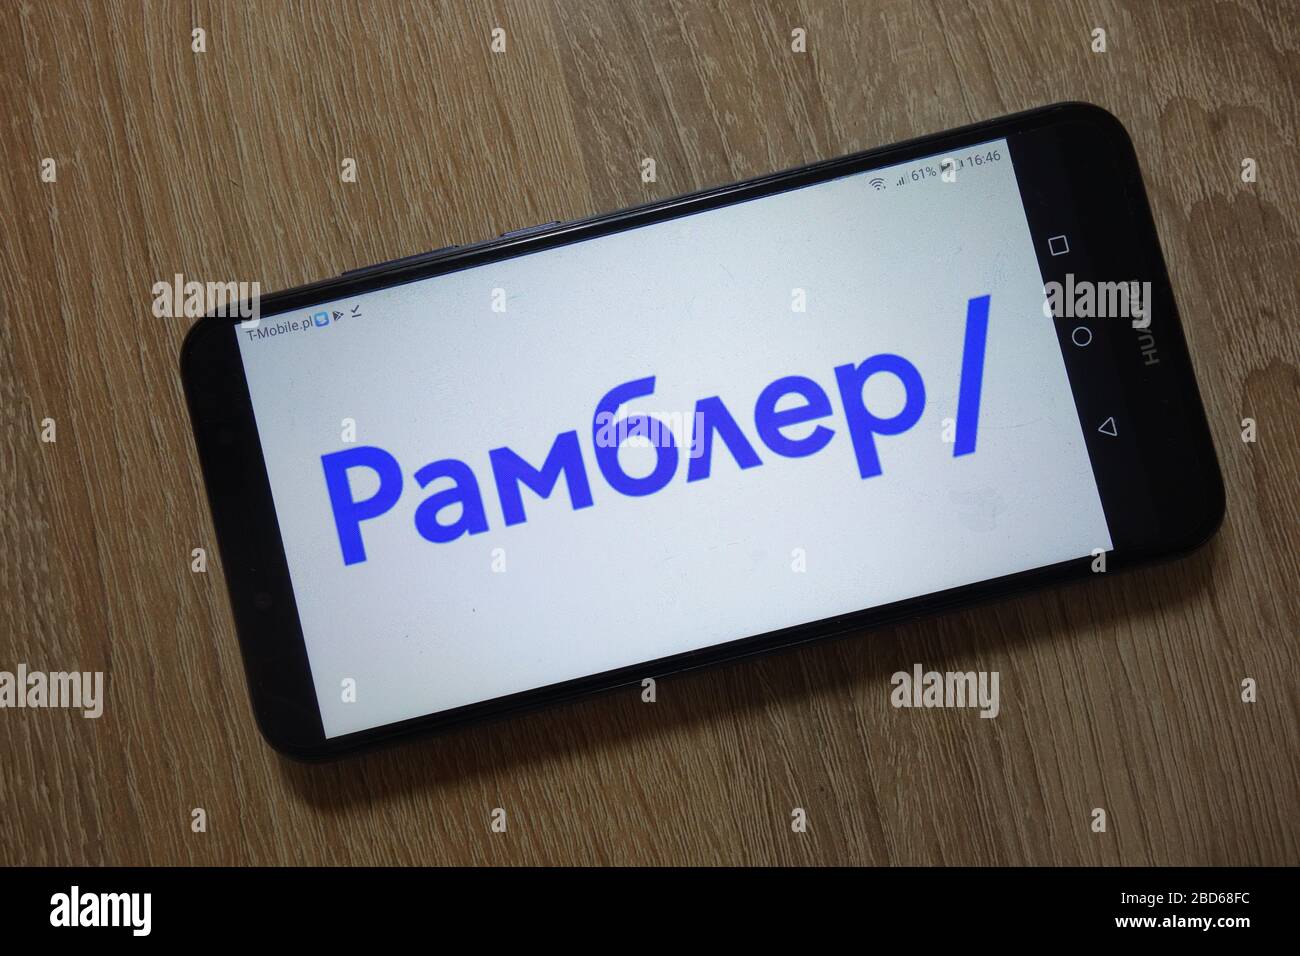 El logotipo del portal Rambler se muestra en el smartphone Foto de stock